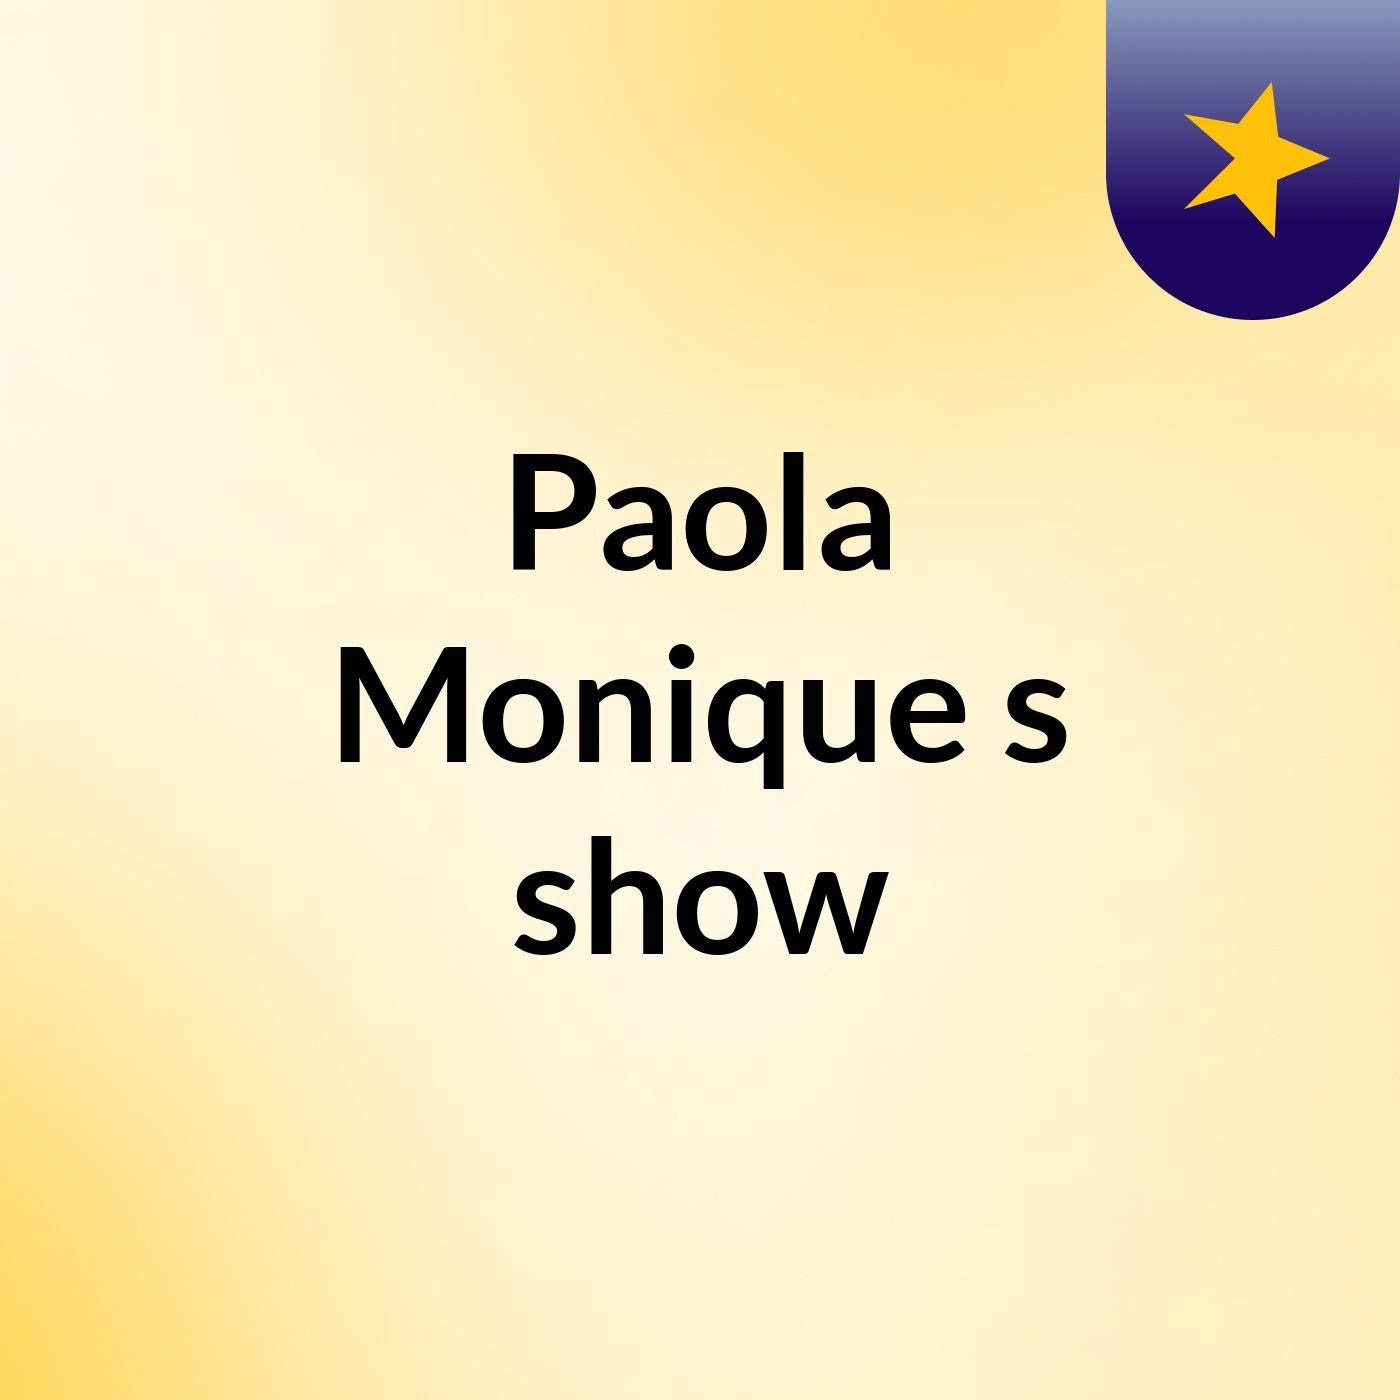 Paola Monique's show